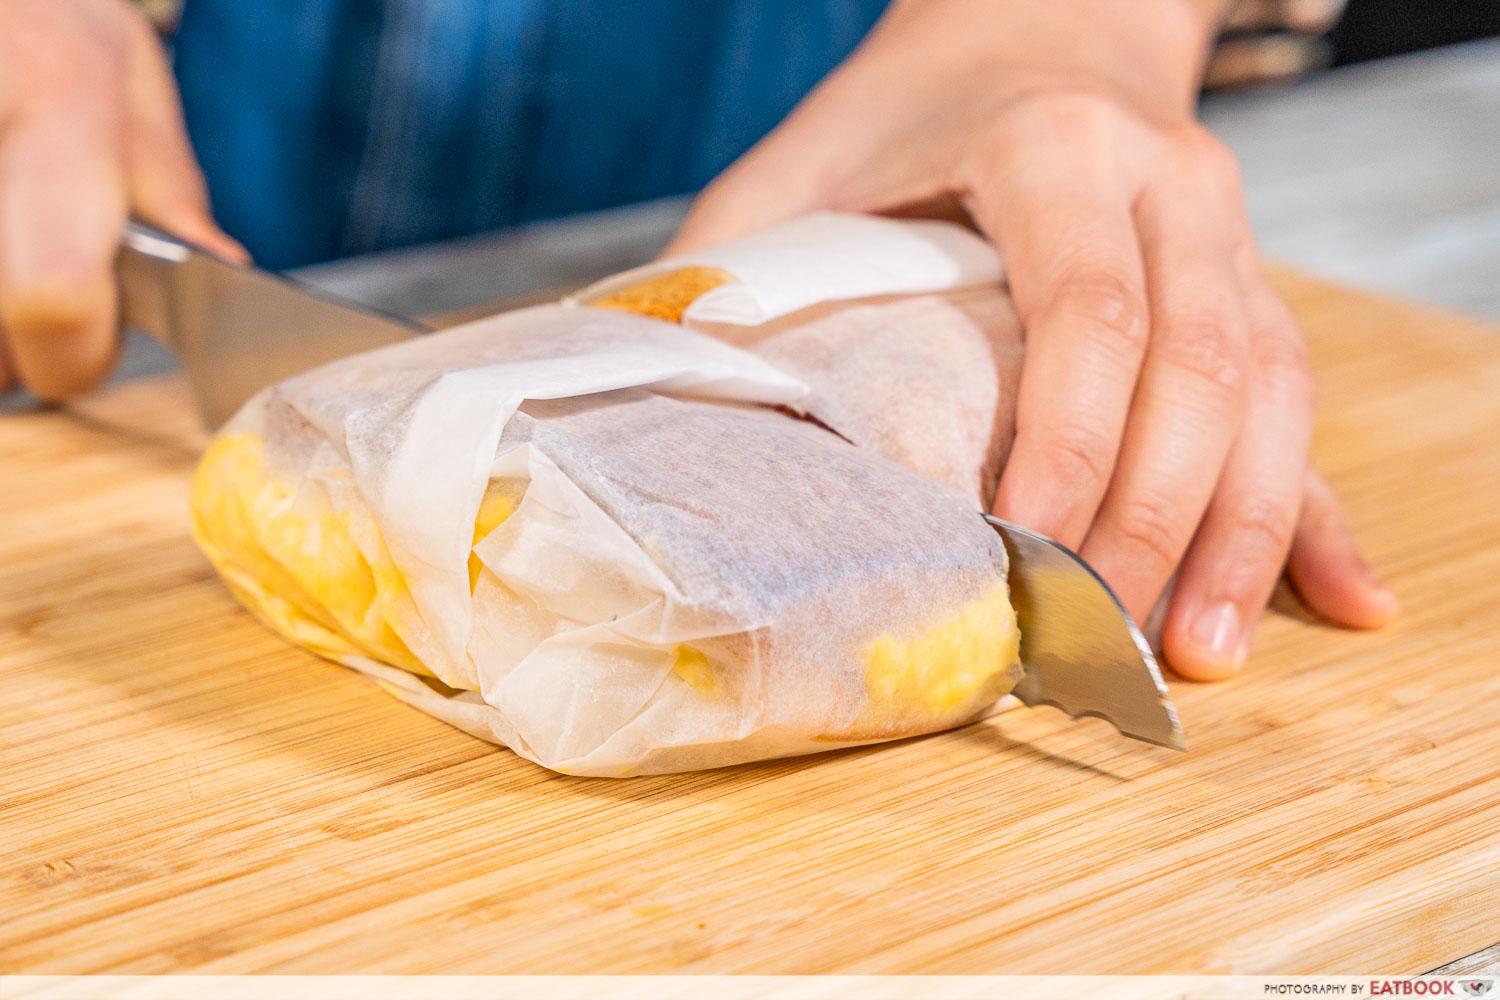 foodpanda egg drop sandwich cutting